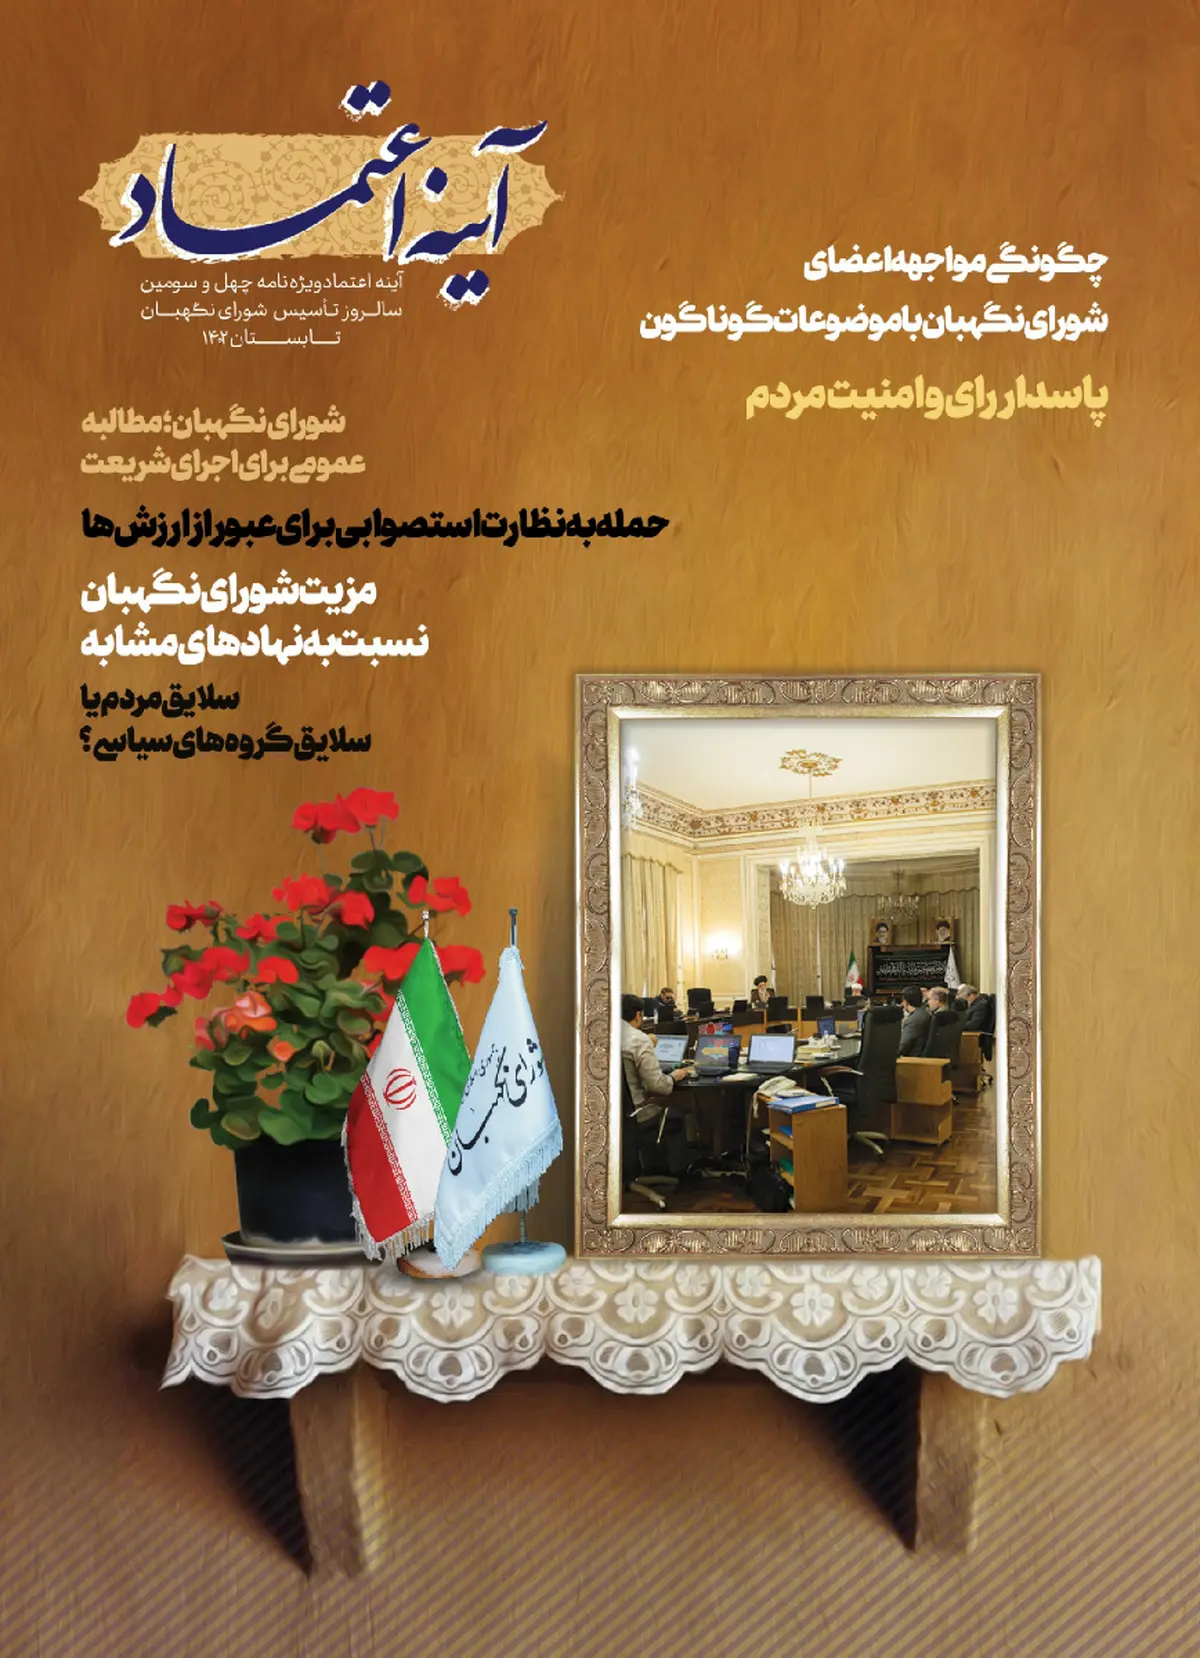 مجله الکترونیکی «آینه اعتماد» شورای نگهبان منتشر شد